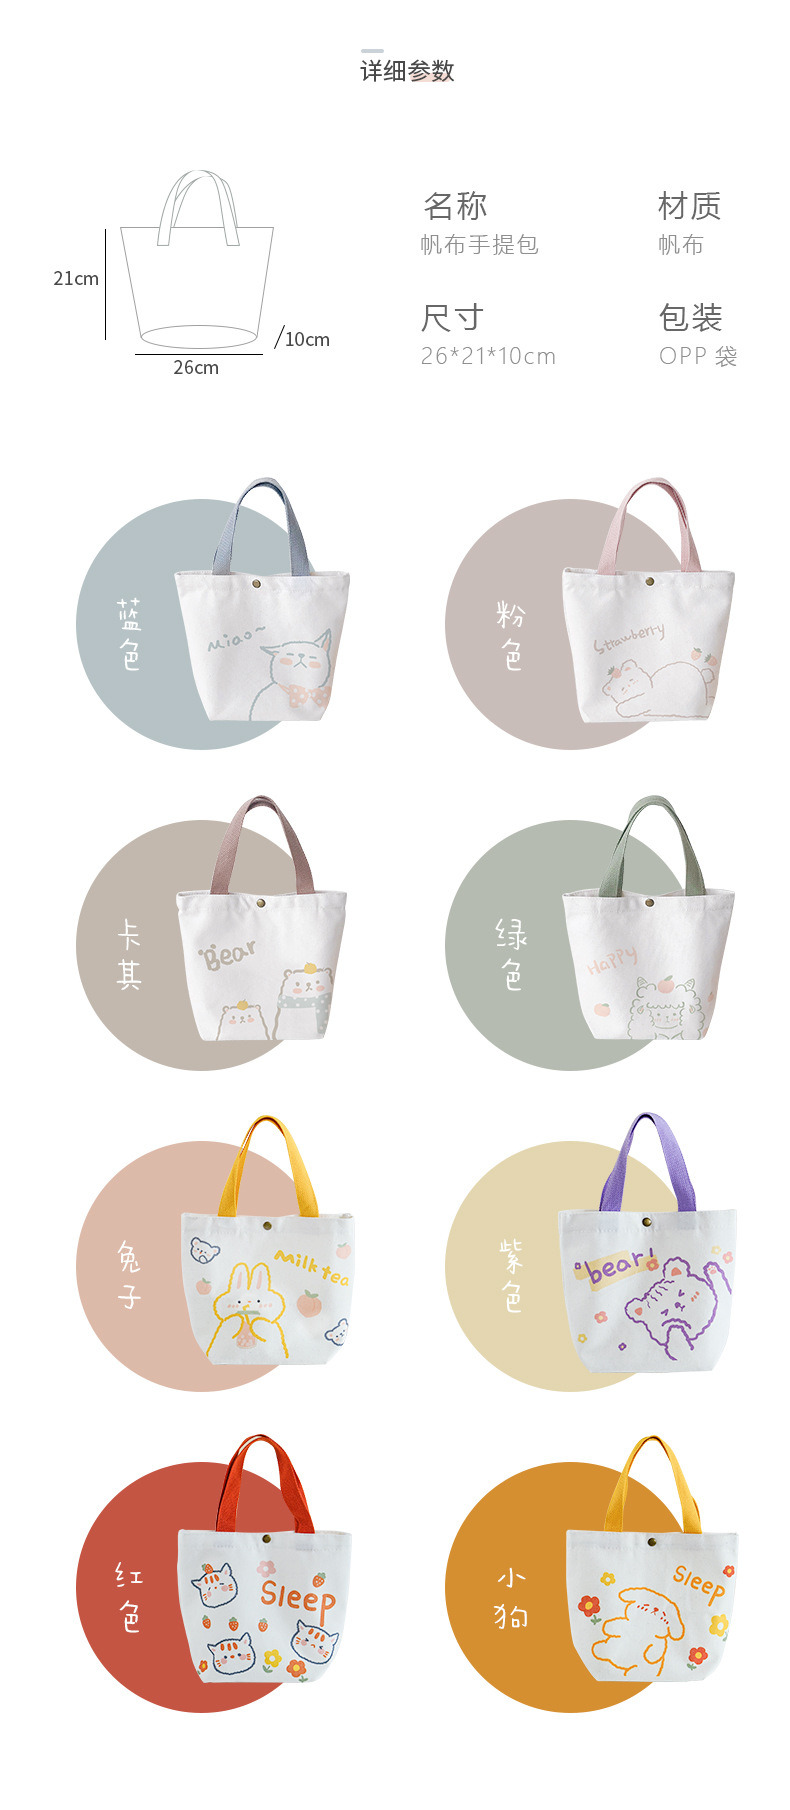 New Personalized Small Fresh Shopping Bag Leisure Shopping Ladies Handbag Canvas Bag